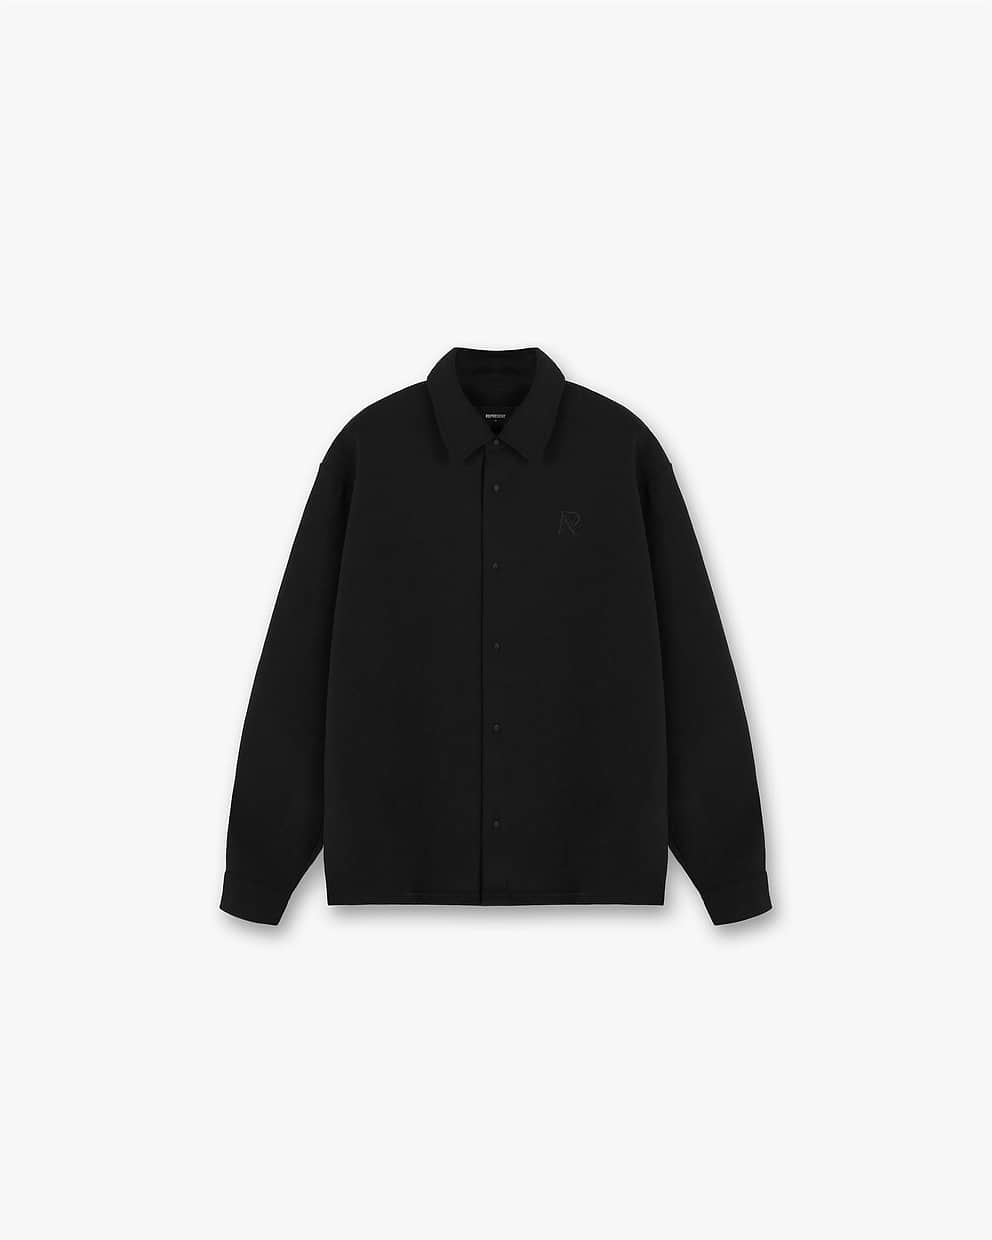 Black Initial Shirt | REPRESENT CLO